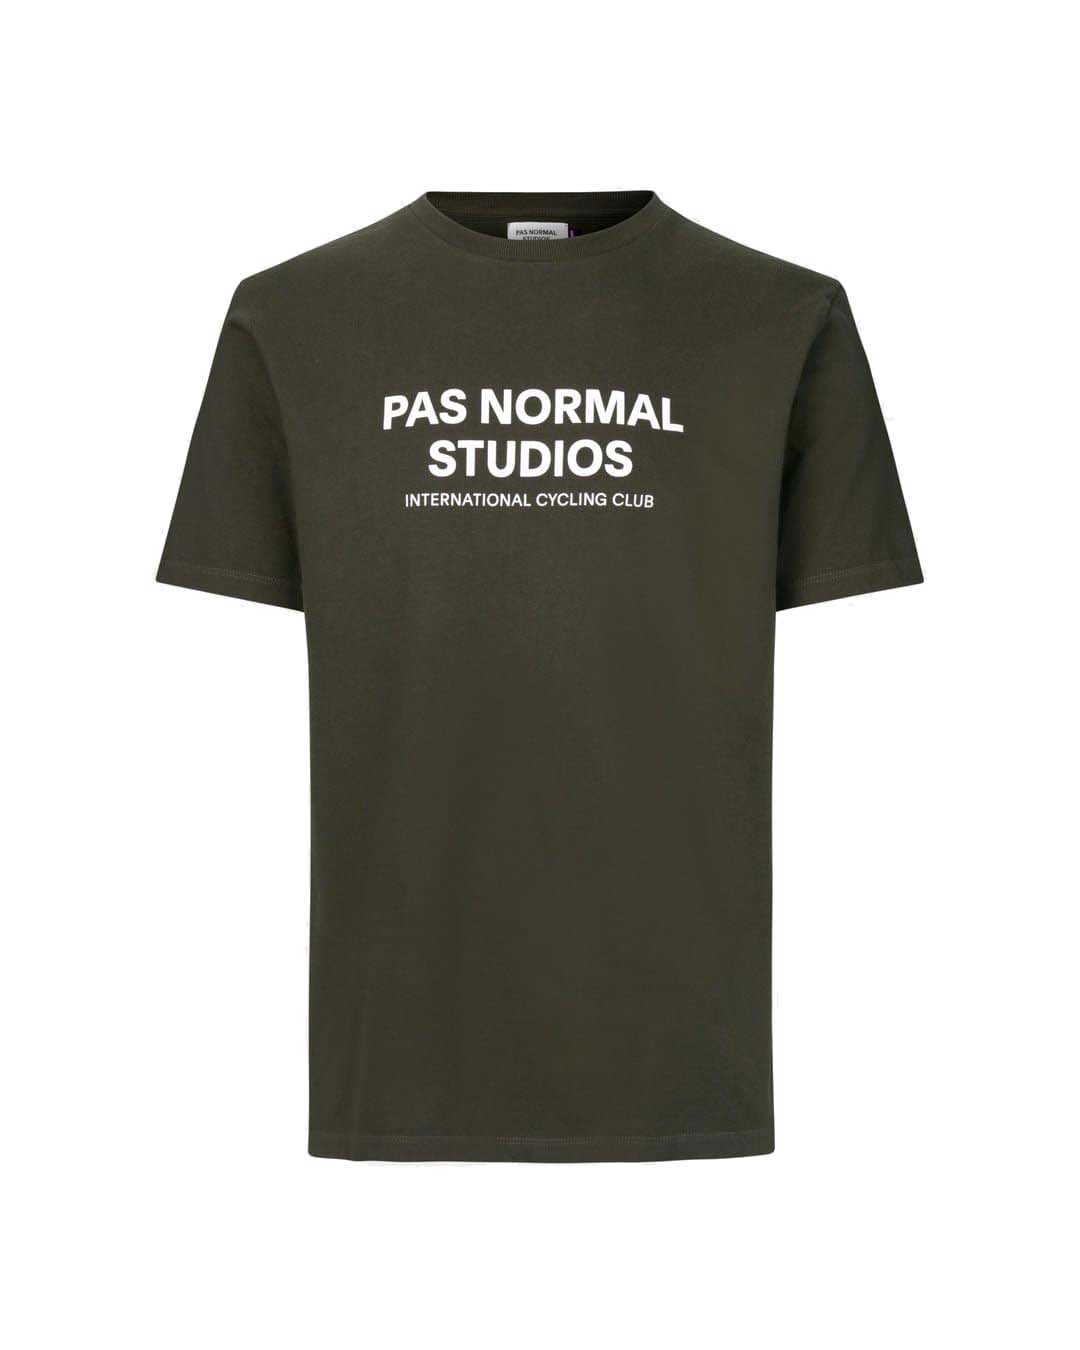 PAS NORMAL STUDIOS Logo TShirt Manches Courtes - Olive Foncé